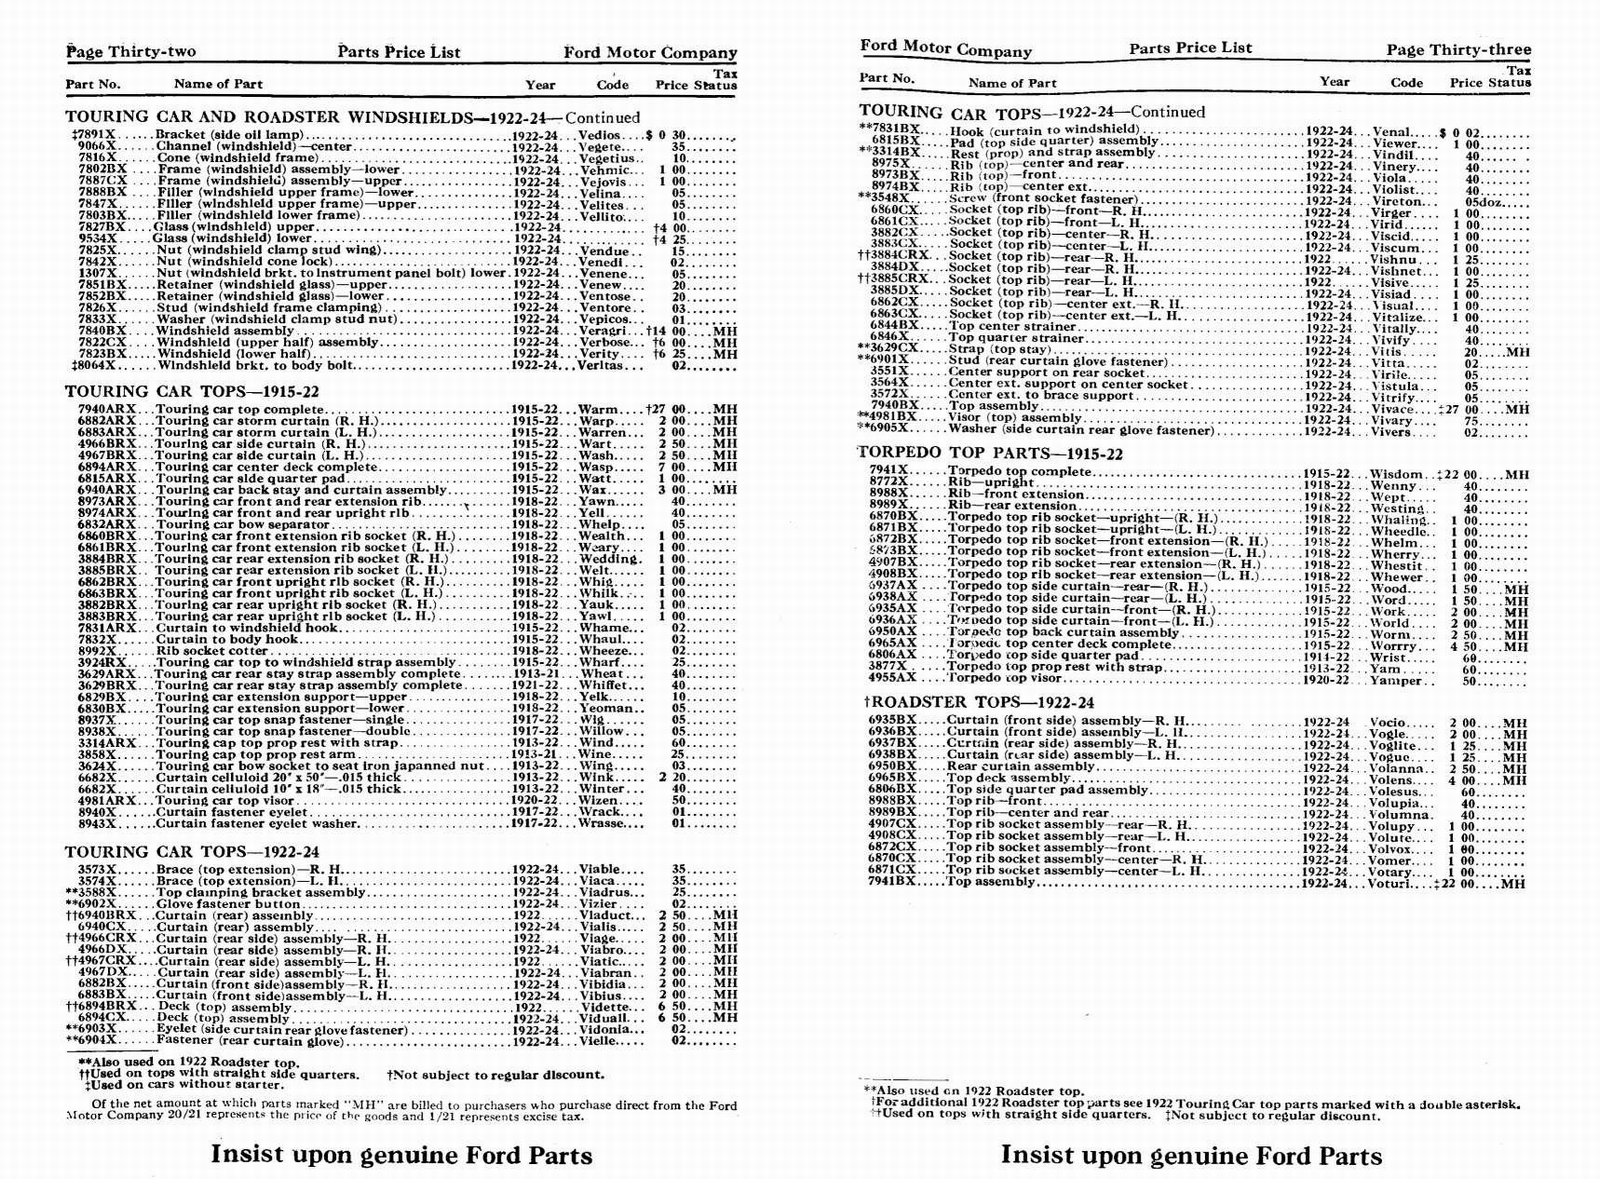 n_1924 Ford Price List-32-33.jpg